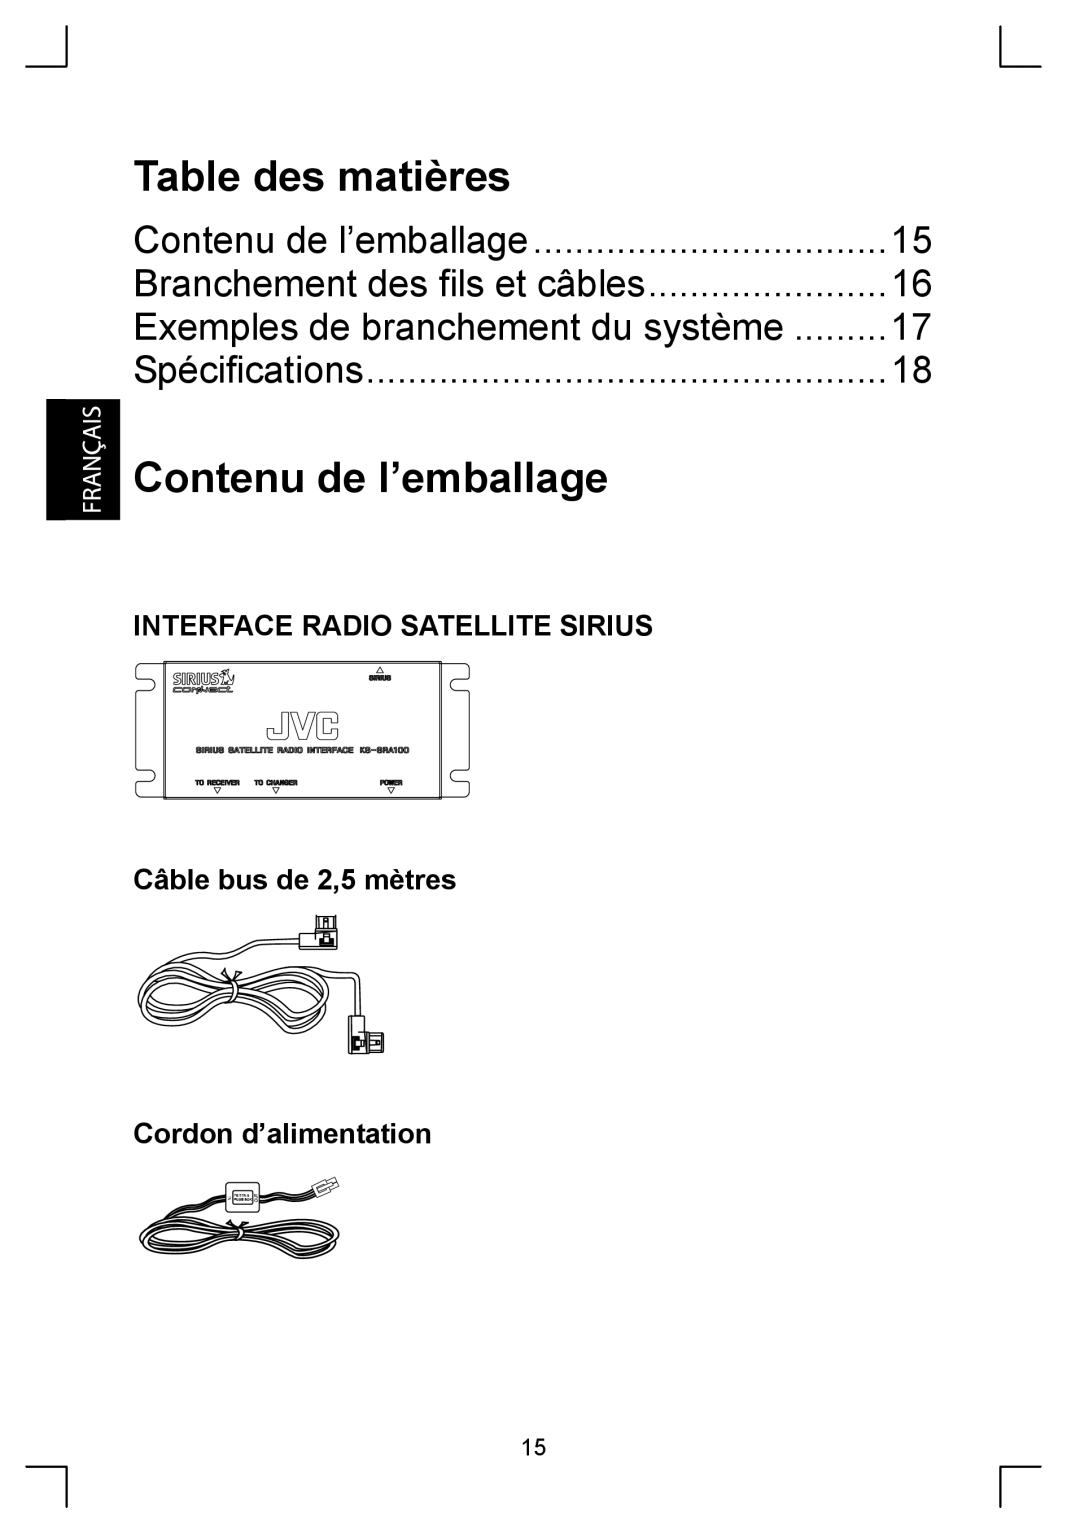 Sirius Satellite Radio KS-SRA100 manual Table des matières, Contenu de l’emballage, Branchement des fils et câbles 